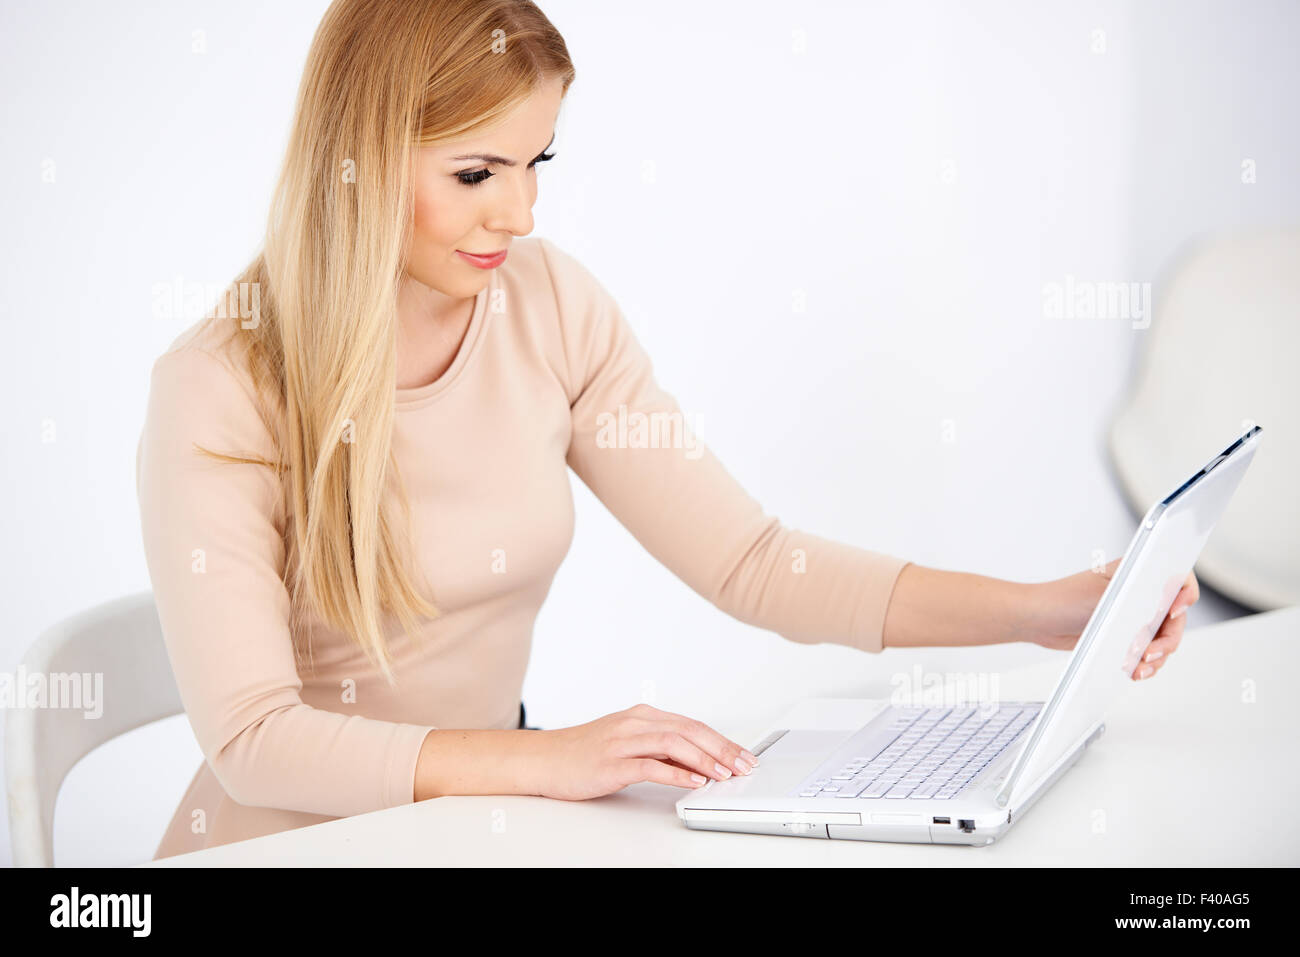 Attraktive blonde Frau auf einem Laptop arbeiten Stockfoto